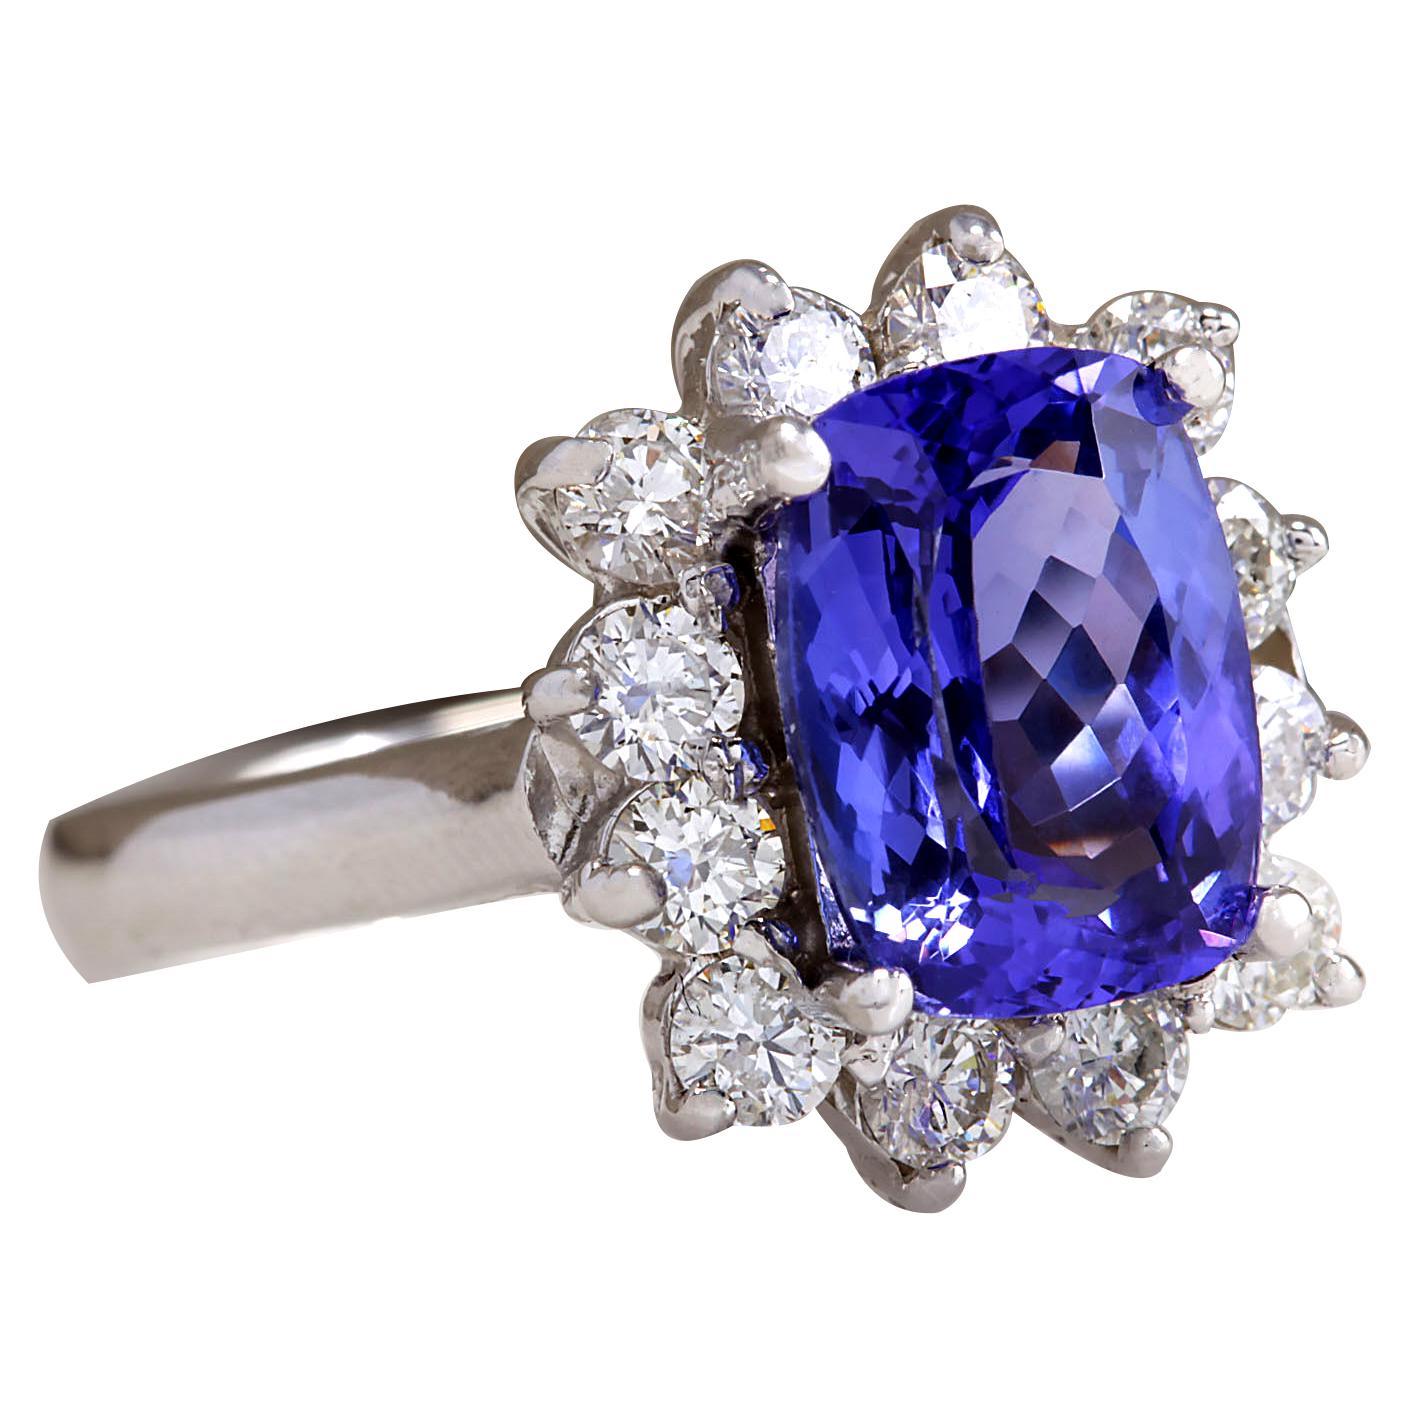 4.04 Carat Natural Tanzanite 14 Karat White Gold Diamond Ring
Stamped: 14K White Gold
Total Ring Weight: 4.8 Grams
Total Natural Tanzanite Weight is 3.14 Carat (Measures: 10.00x8.00 mm)
Color: Blue
Total Natural Diamond Weight is 0.90 Carat
Color: